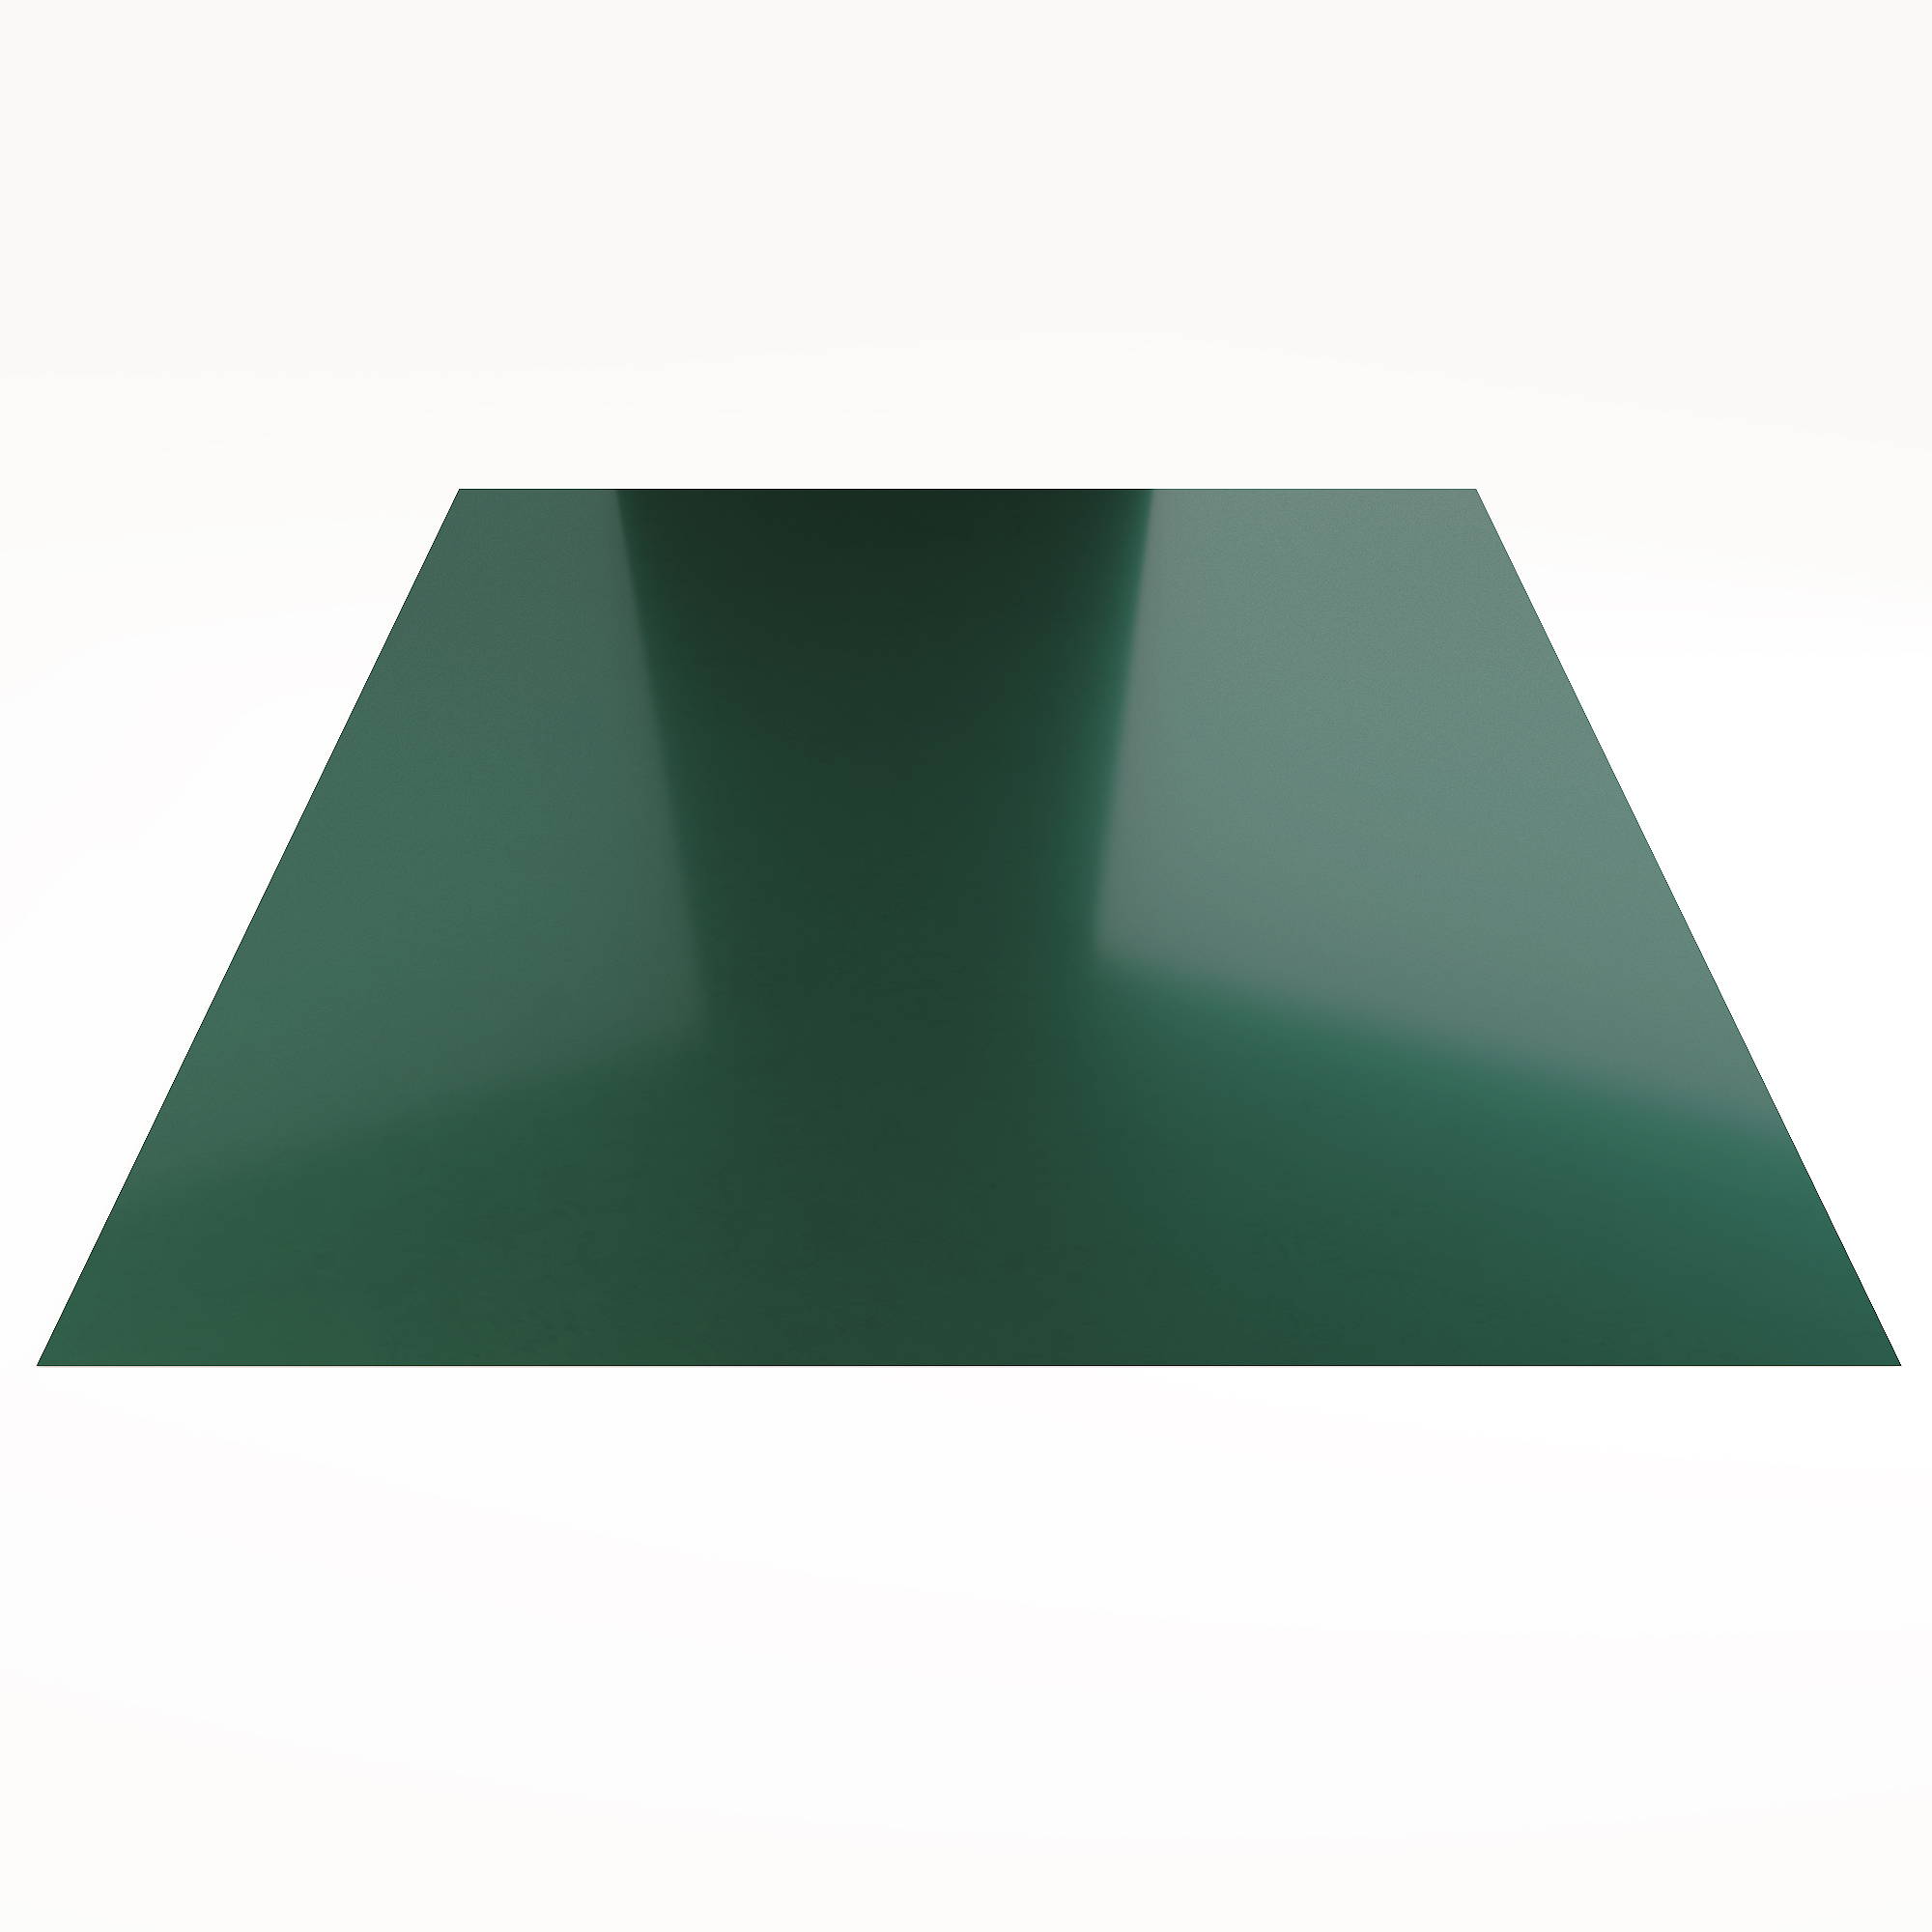 Гладкий лист Гладкий полиэстер RAL 6005 (Зелёный мох) 2500*1250*0,55 односторонний ламинированный